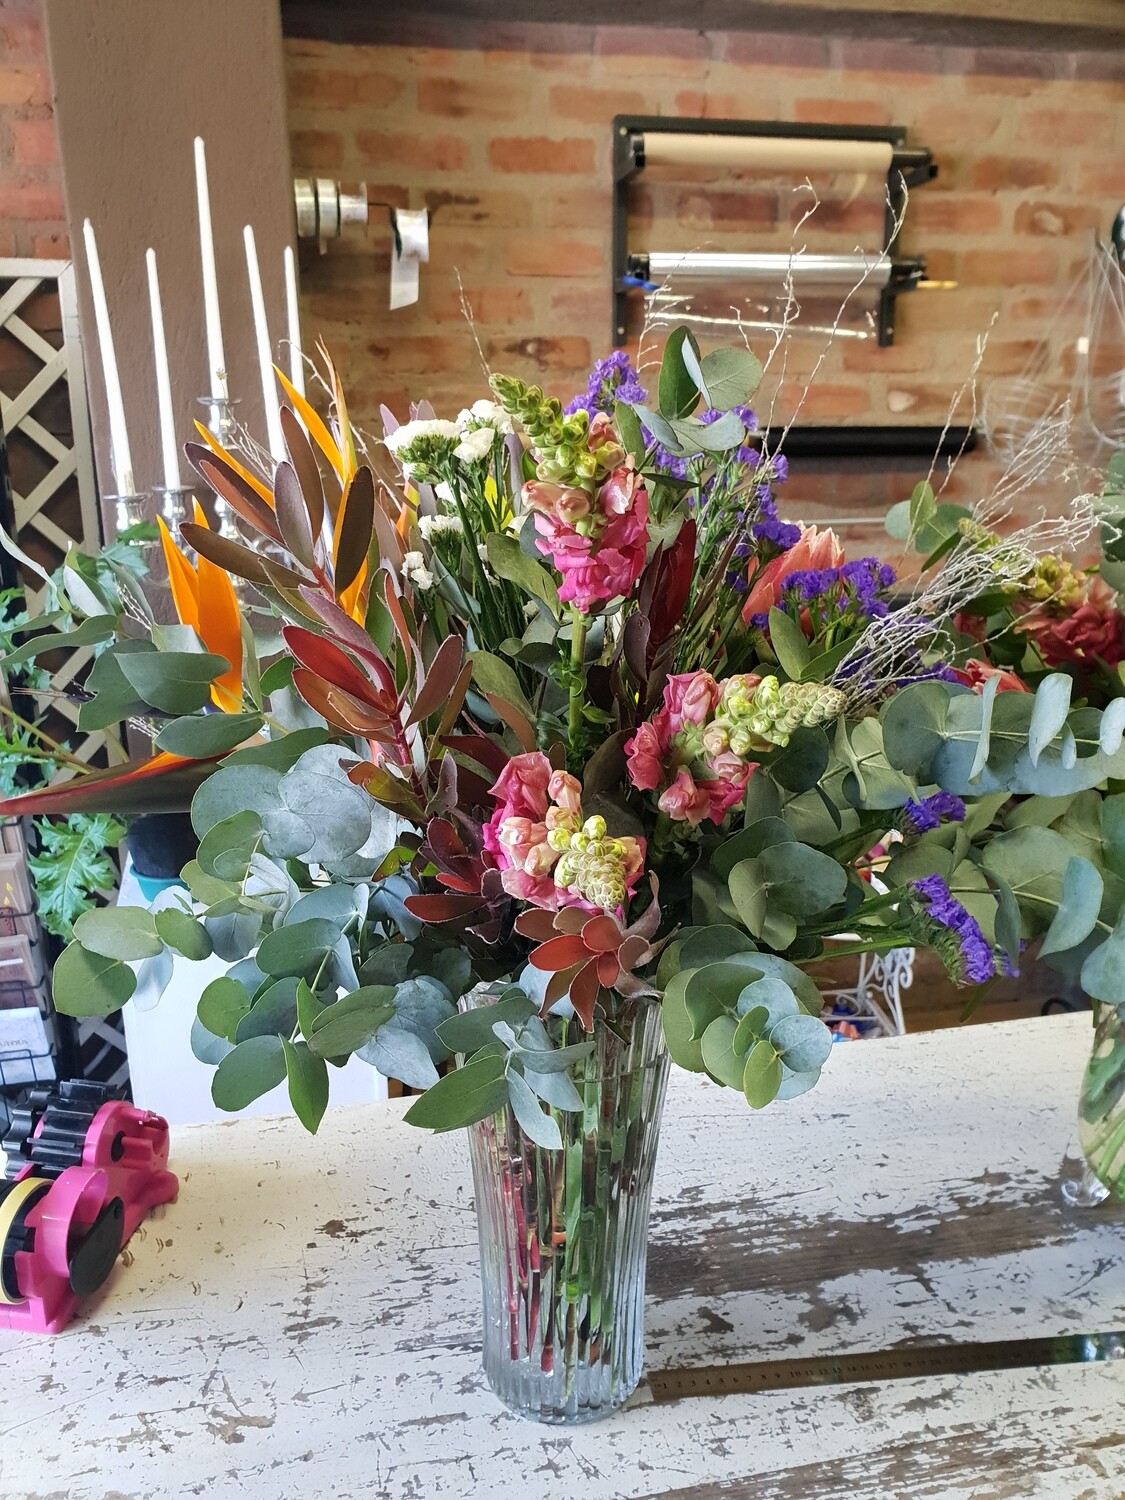 Flowers in a Vase (Seasonal flowers)